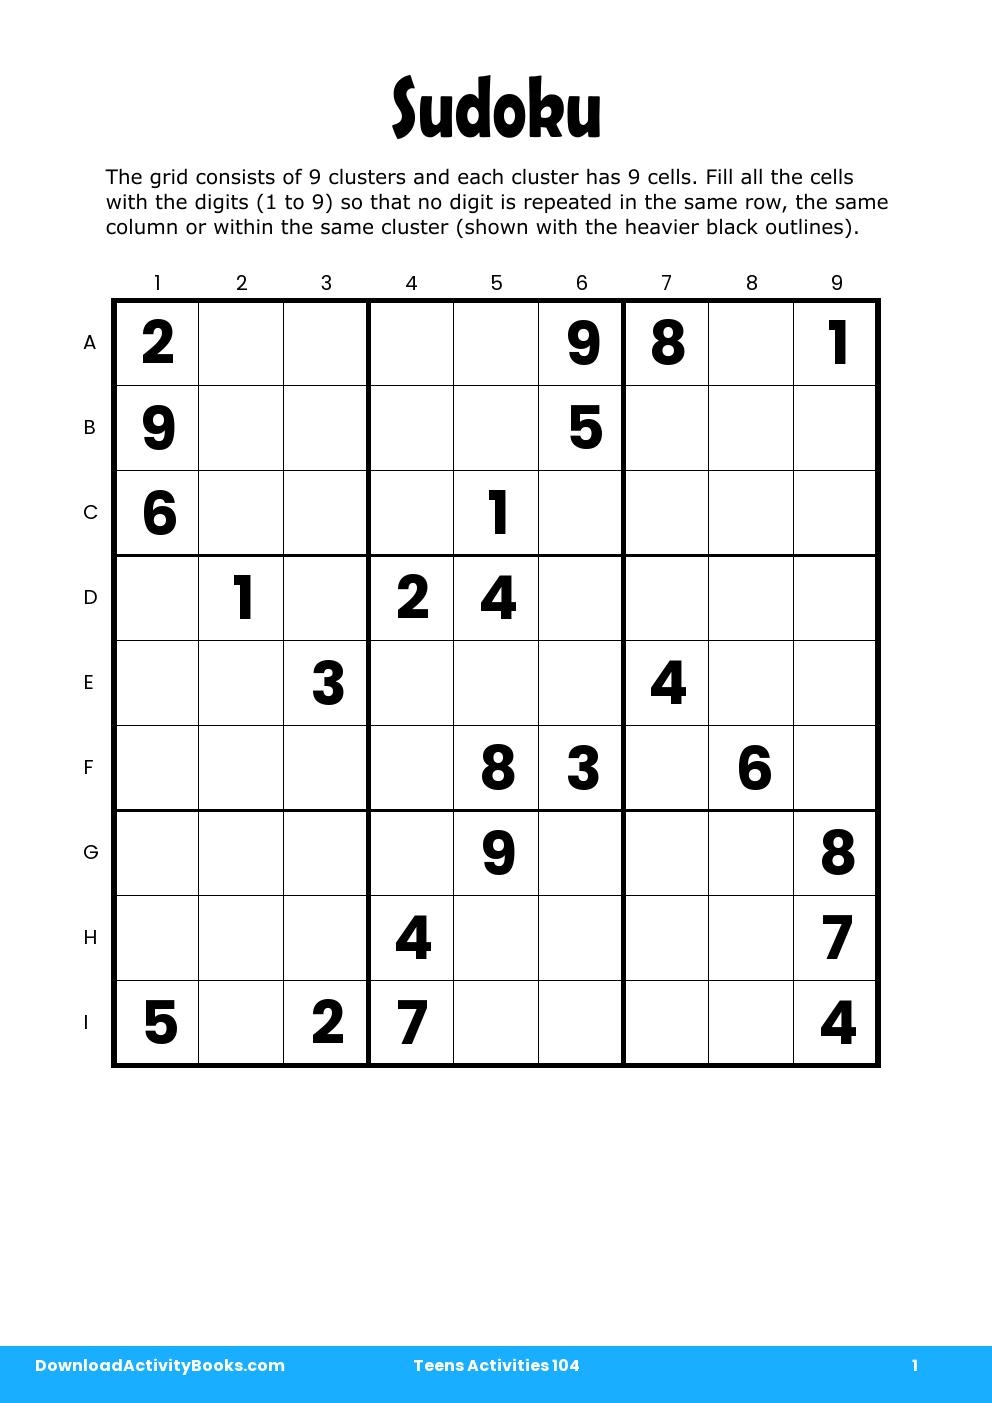 Sudoku in Teens Activities 104